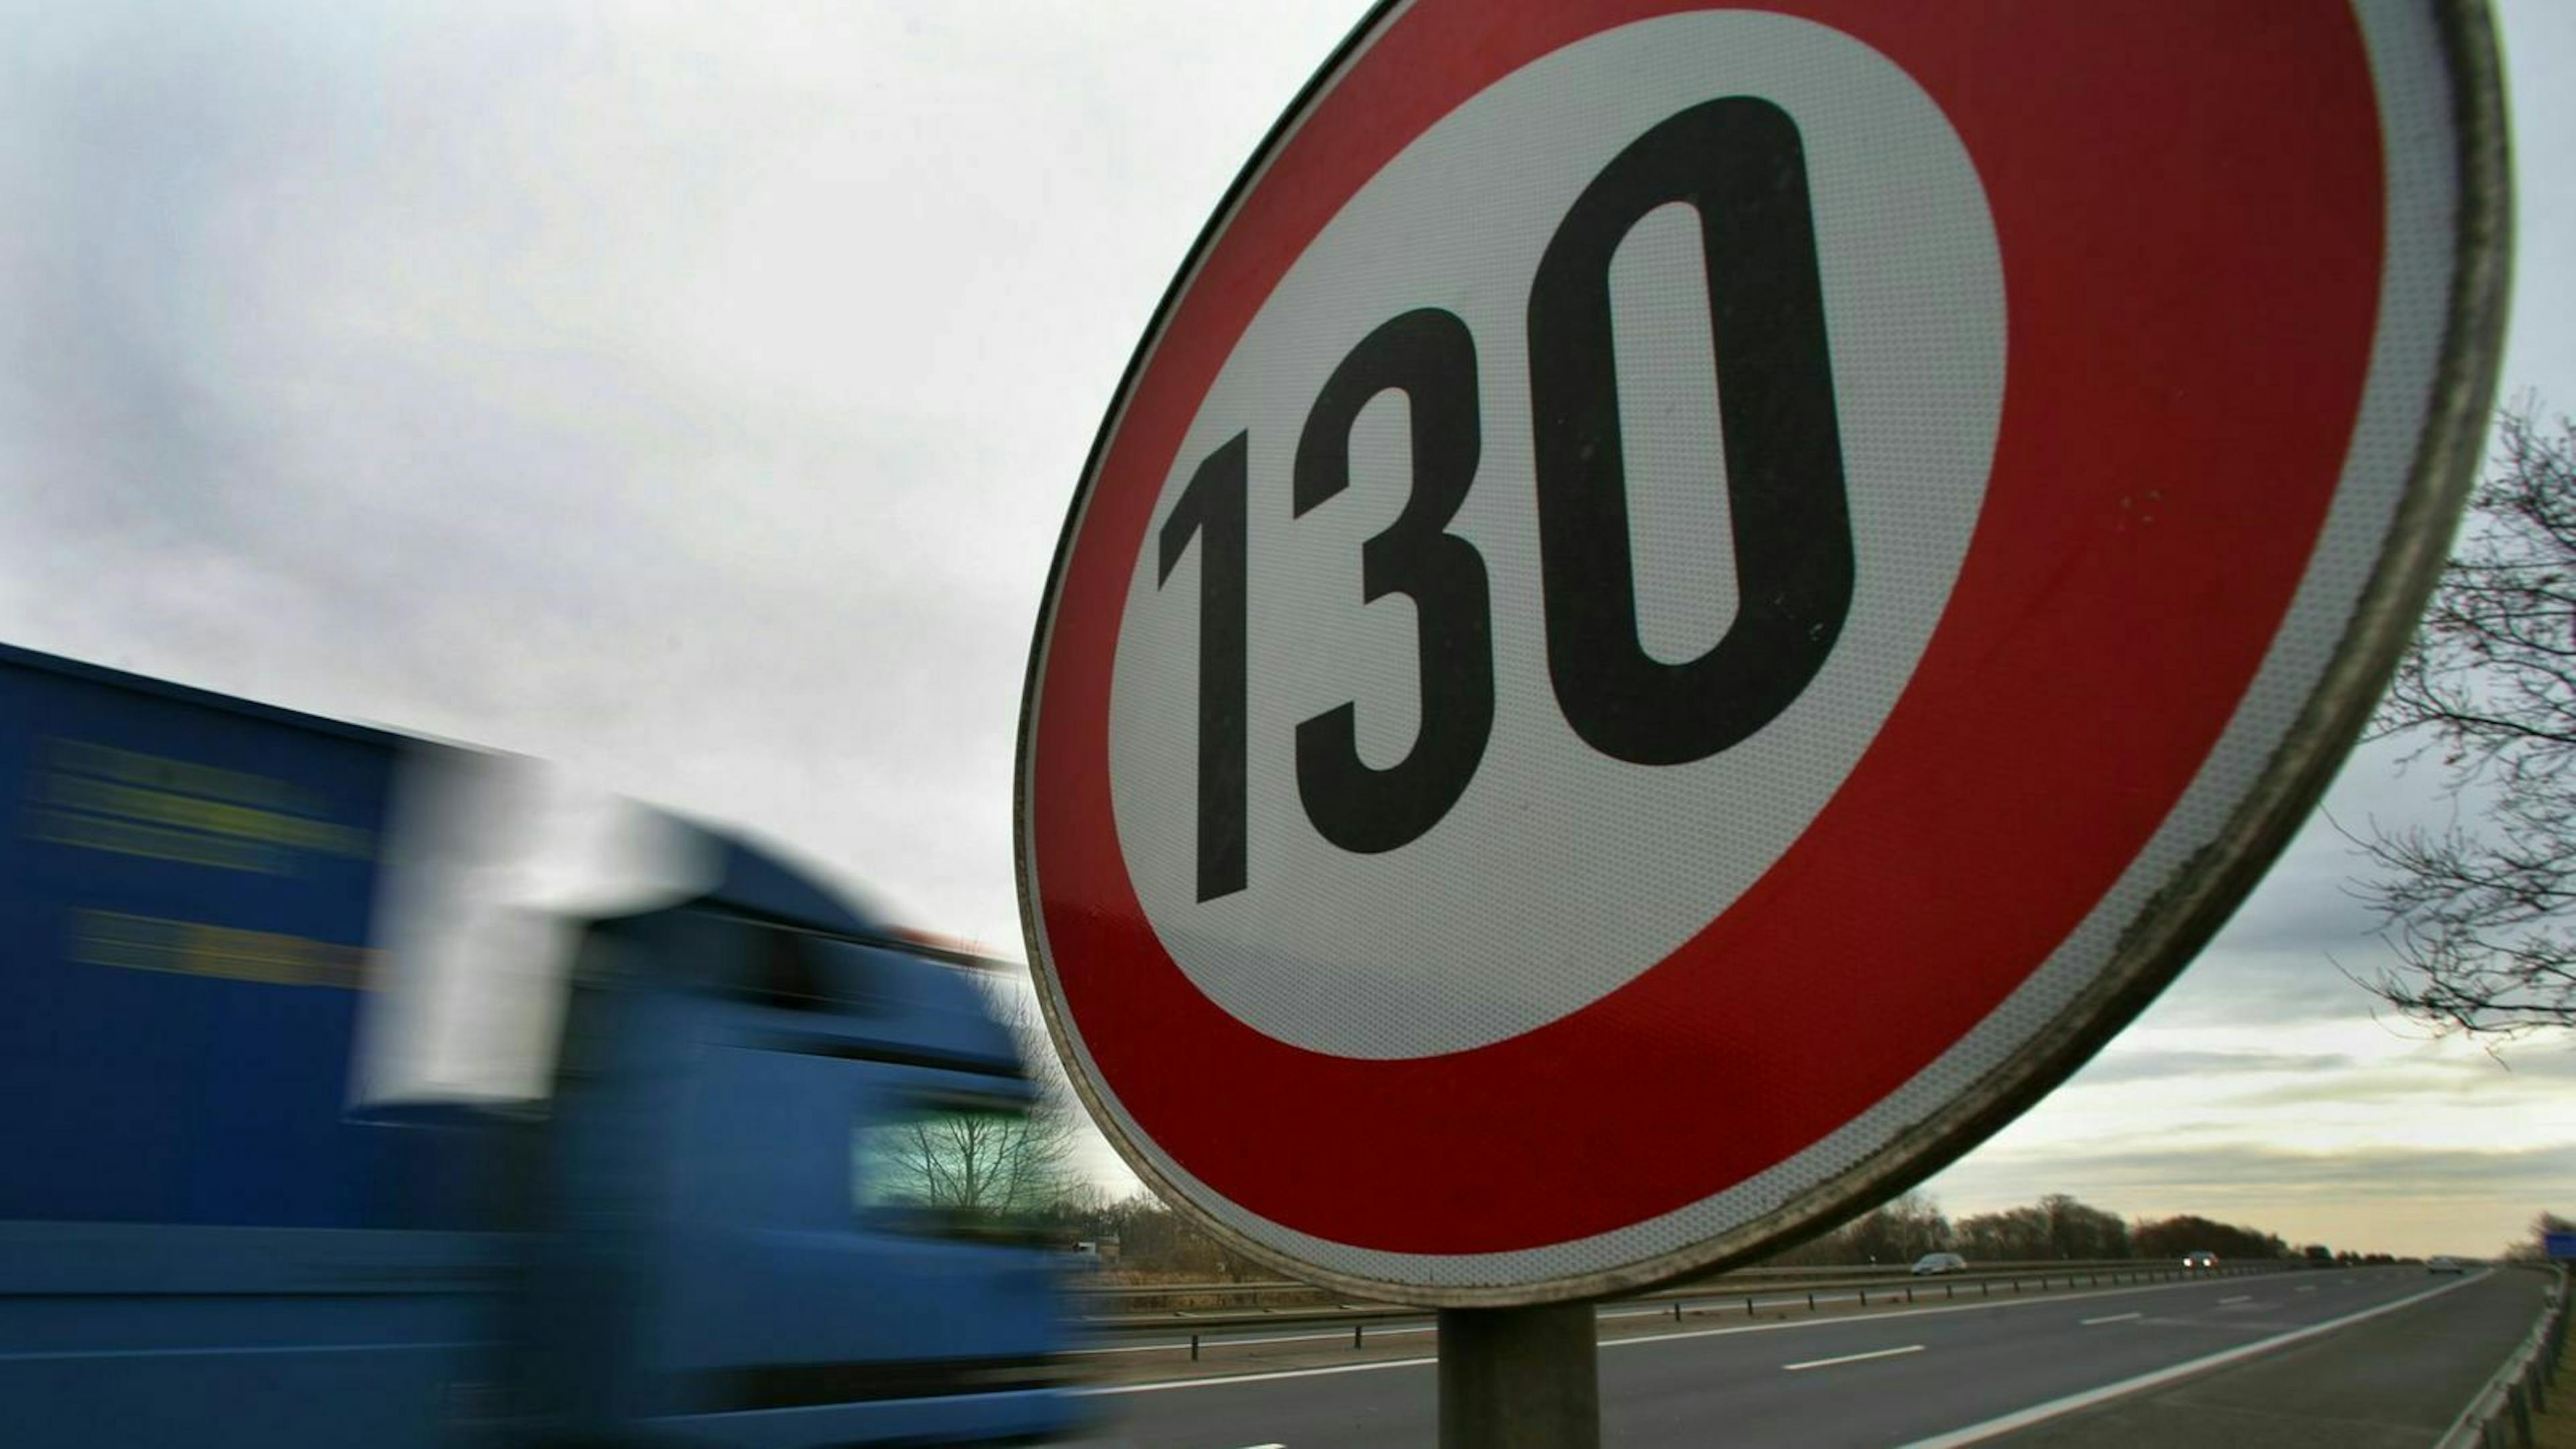 130 Tempolimit Schild an der Autobahn